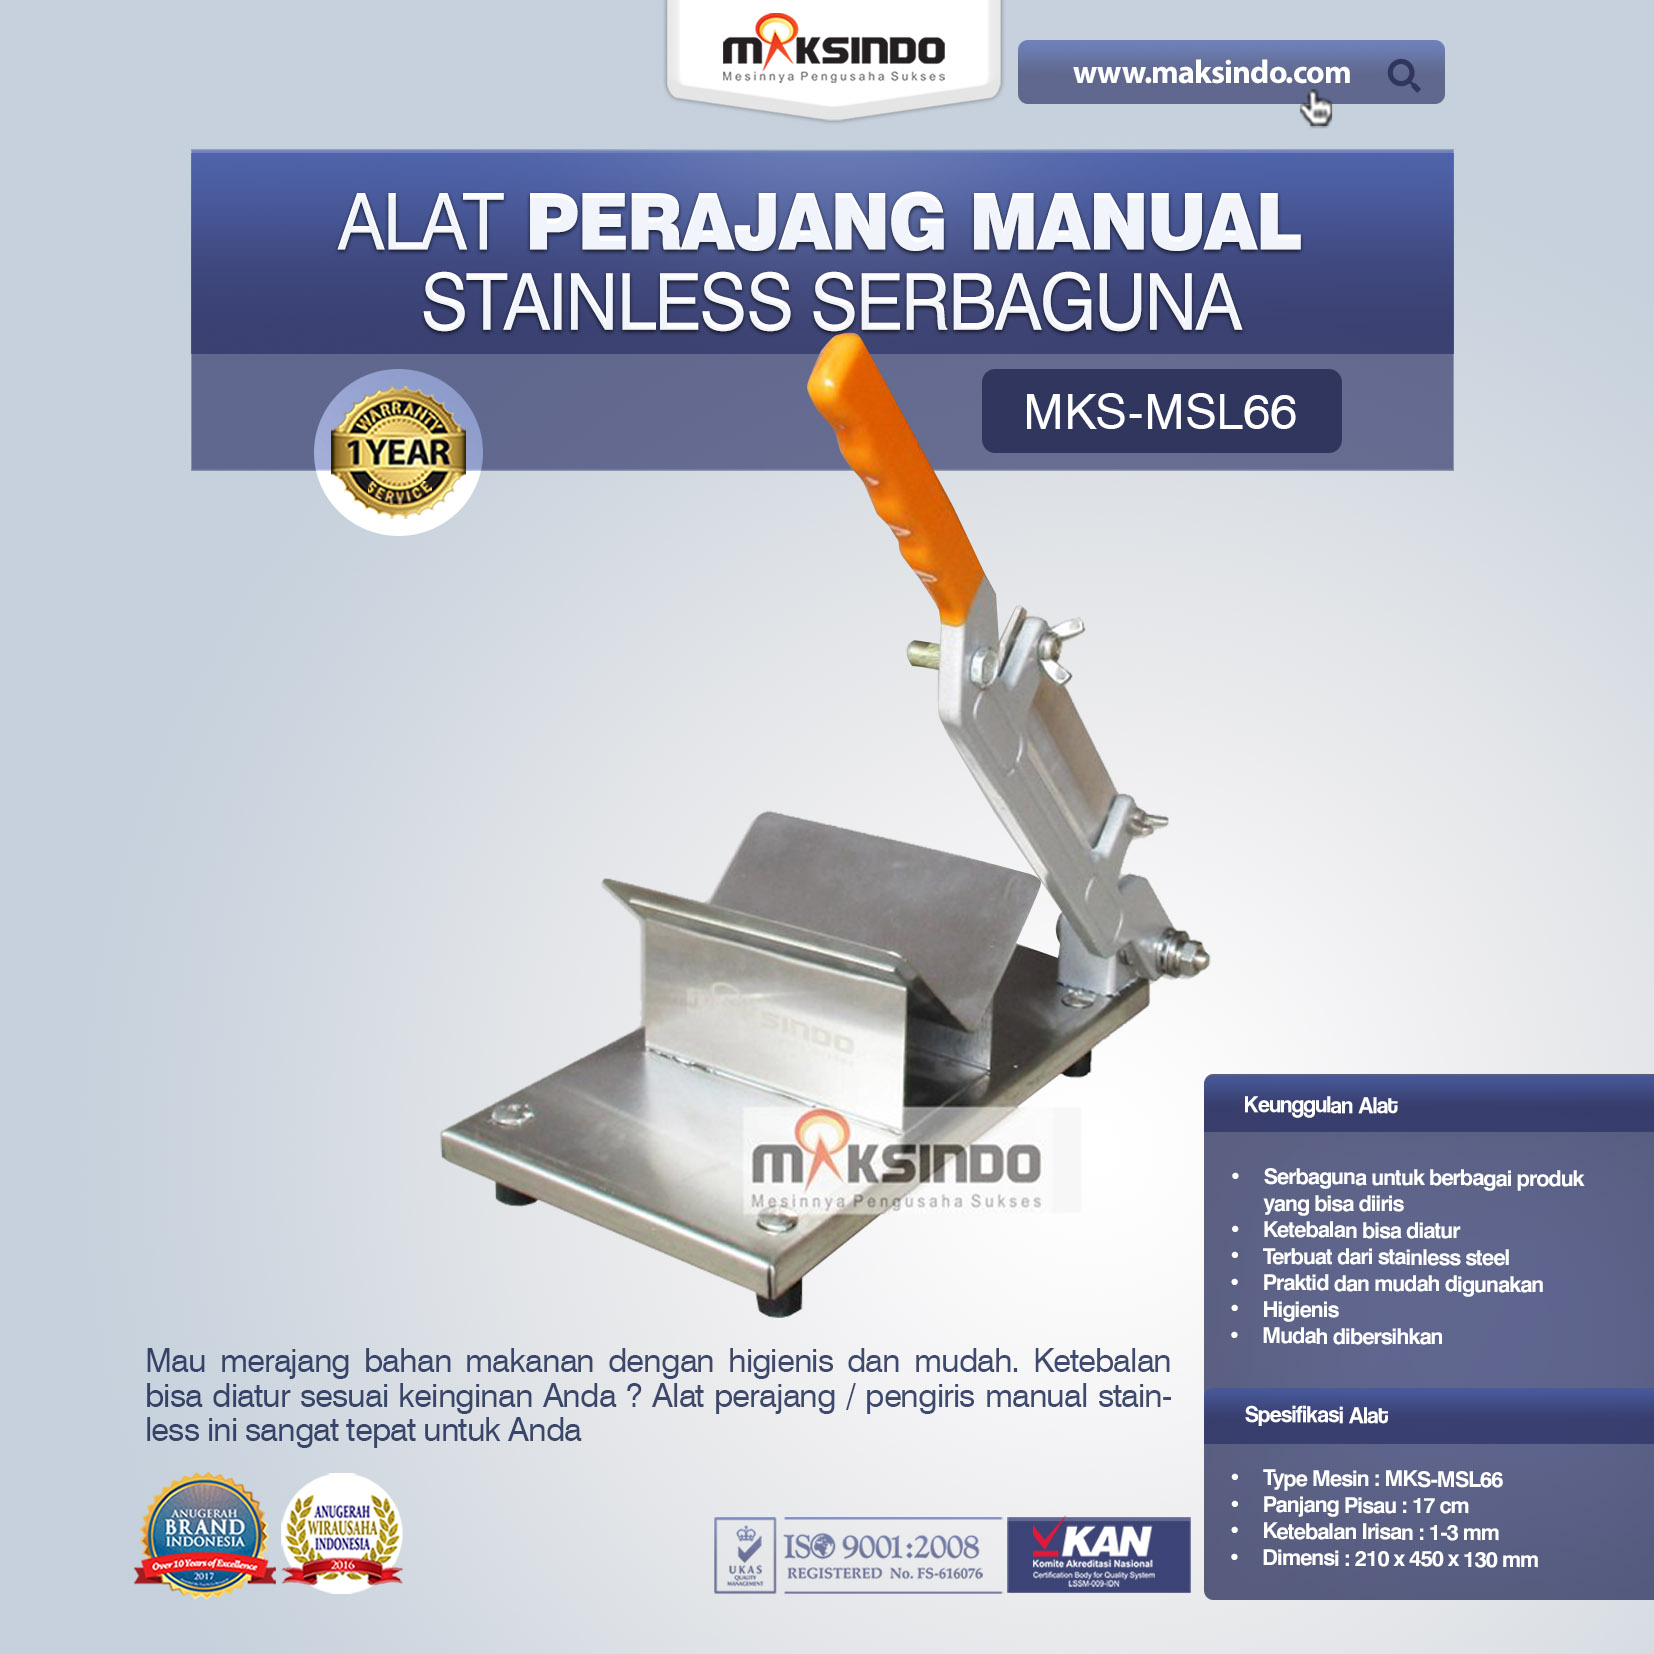 Jual Alat Perajang Manual Stainless Serbaguna di Tangerang